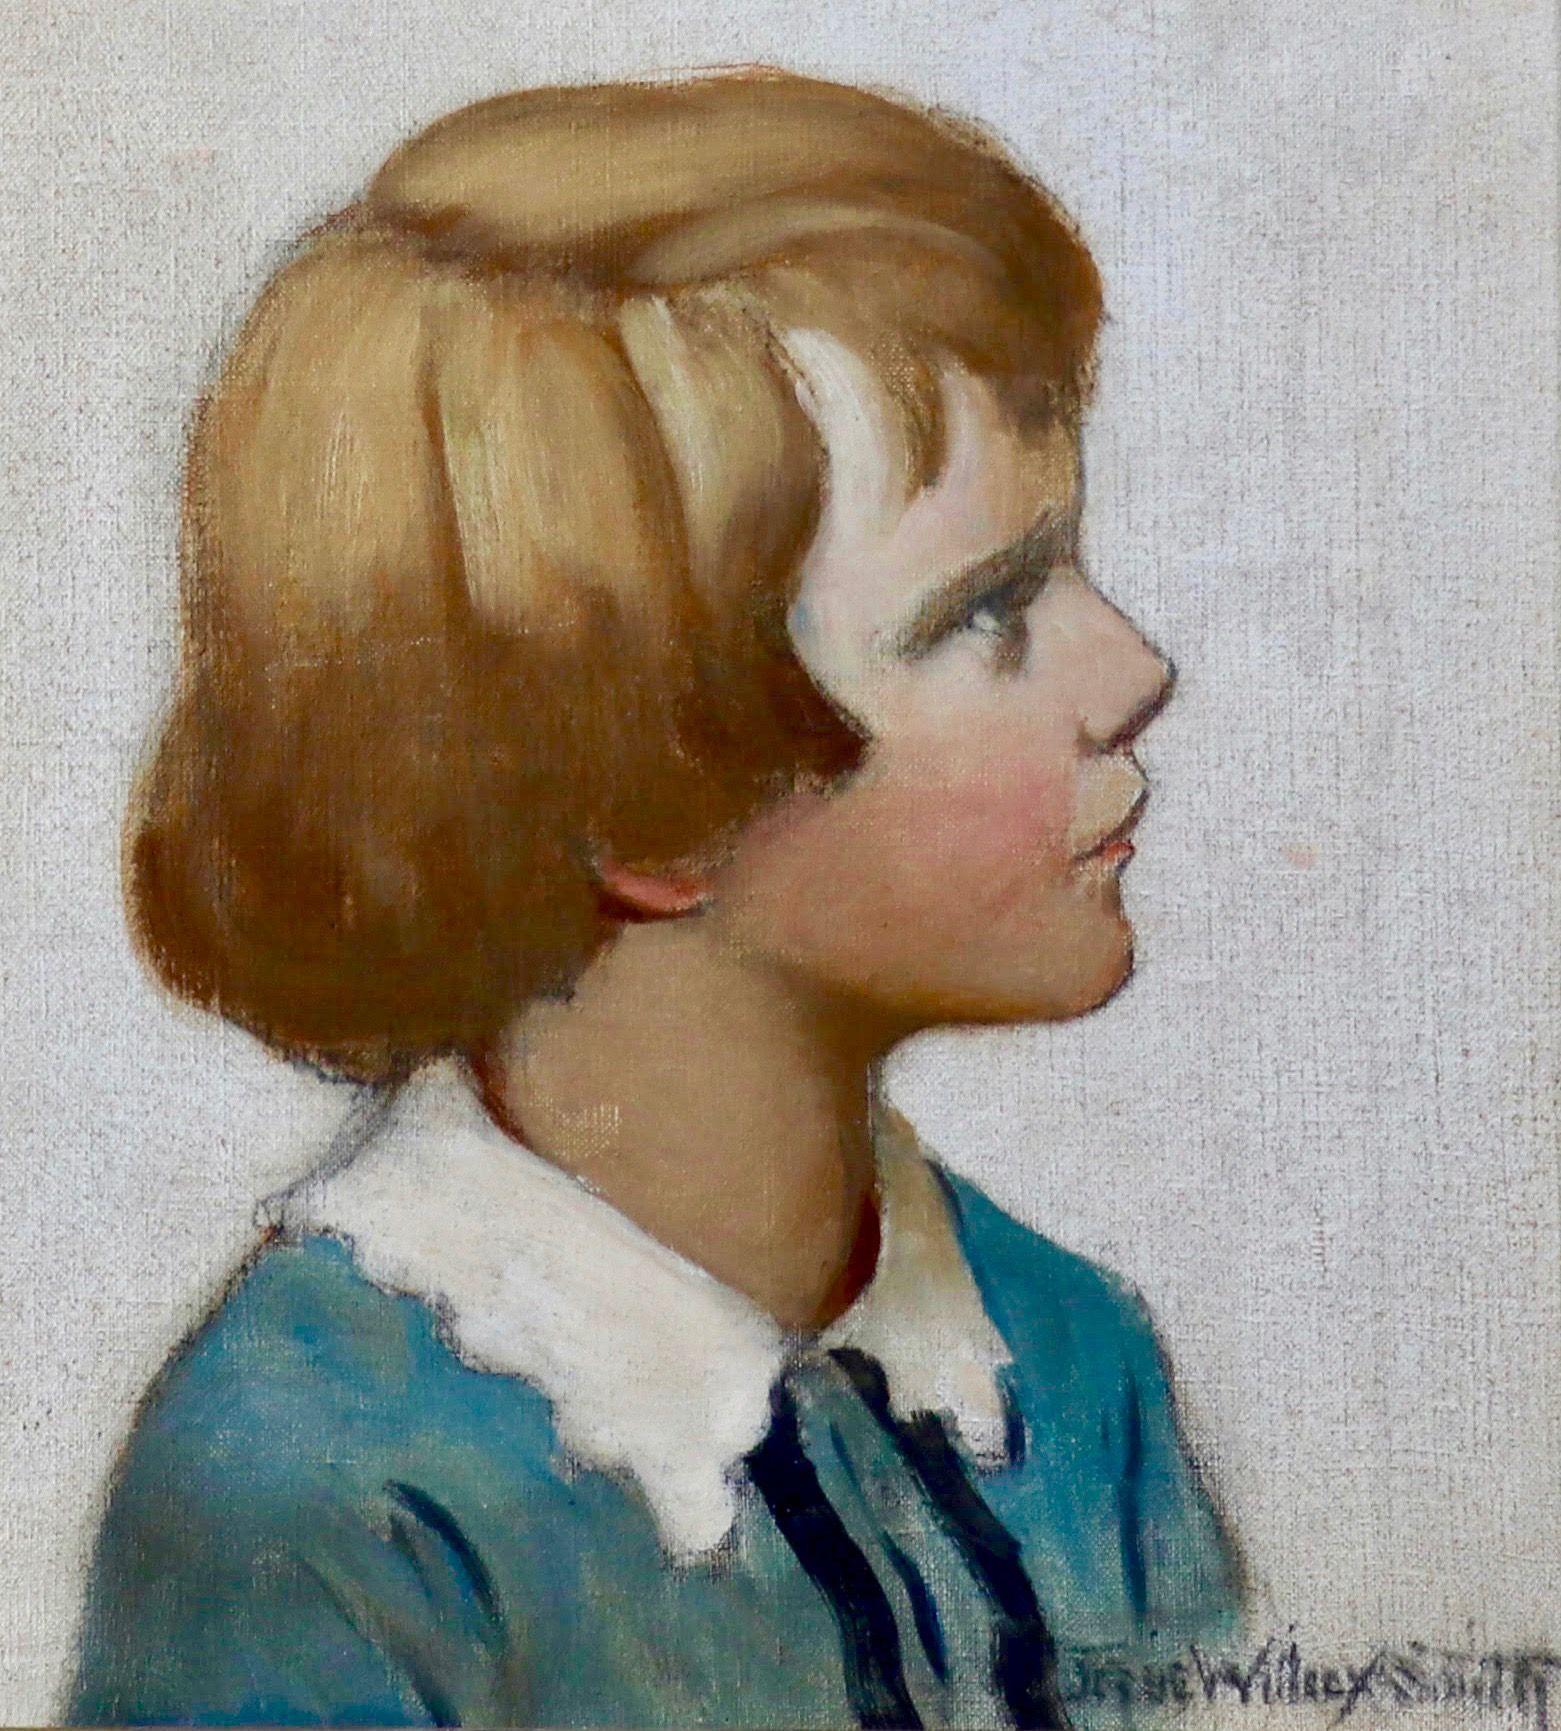 Jessie Willcox Smith Portrait Painting - Portrait of Austin M. Purves, Jr